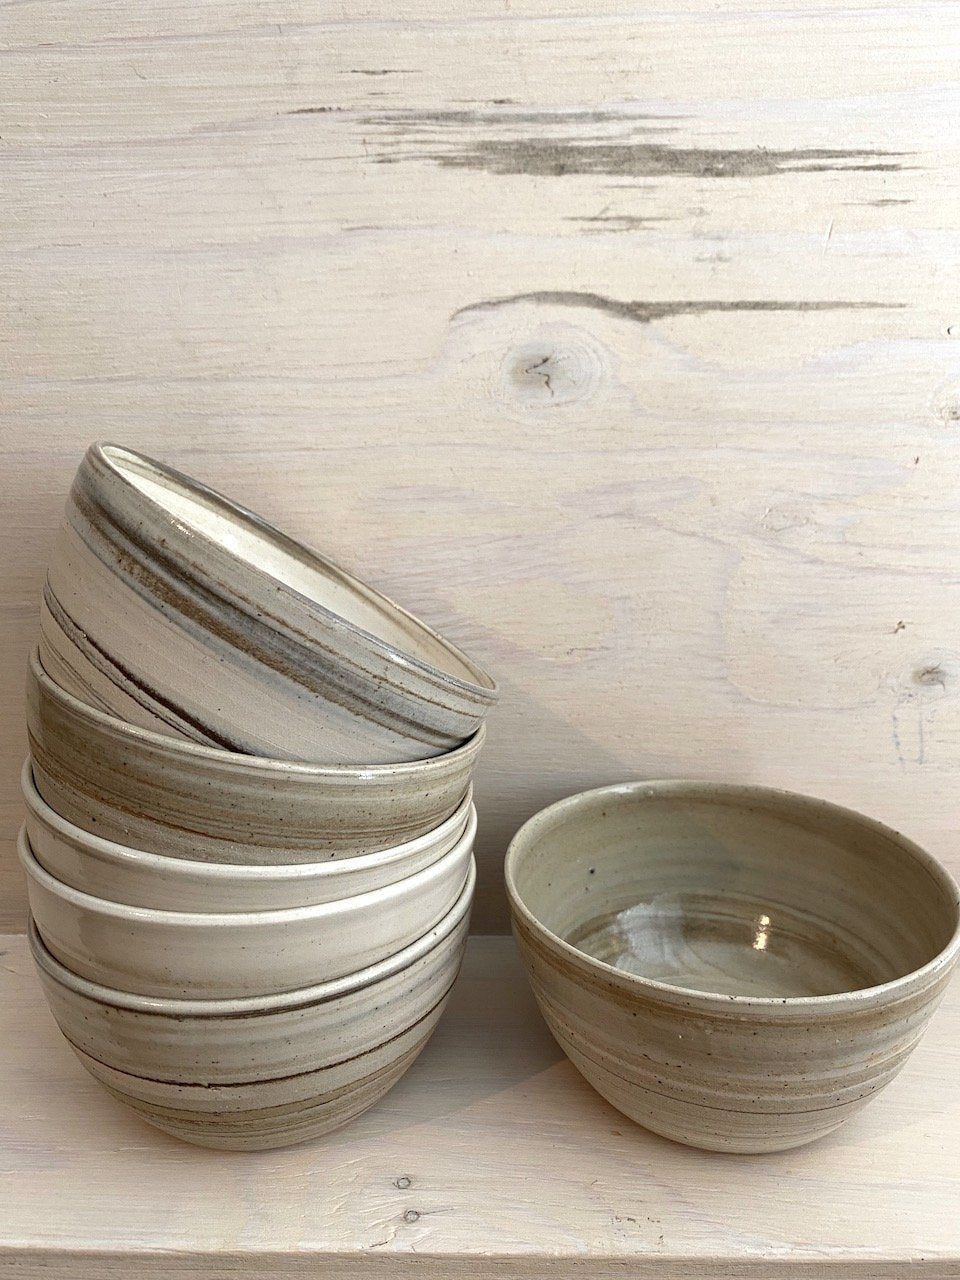 Snack or Breakfast bowl | 300-350ml | Handmade Ceramic by Emporium Julium - Lifestory - Emporium Julium